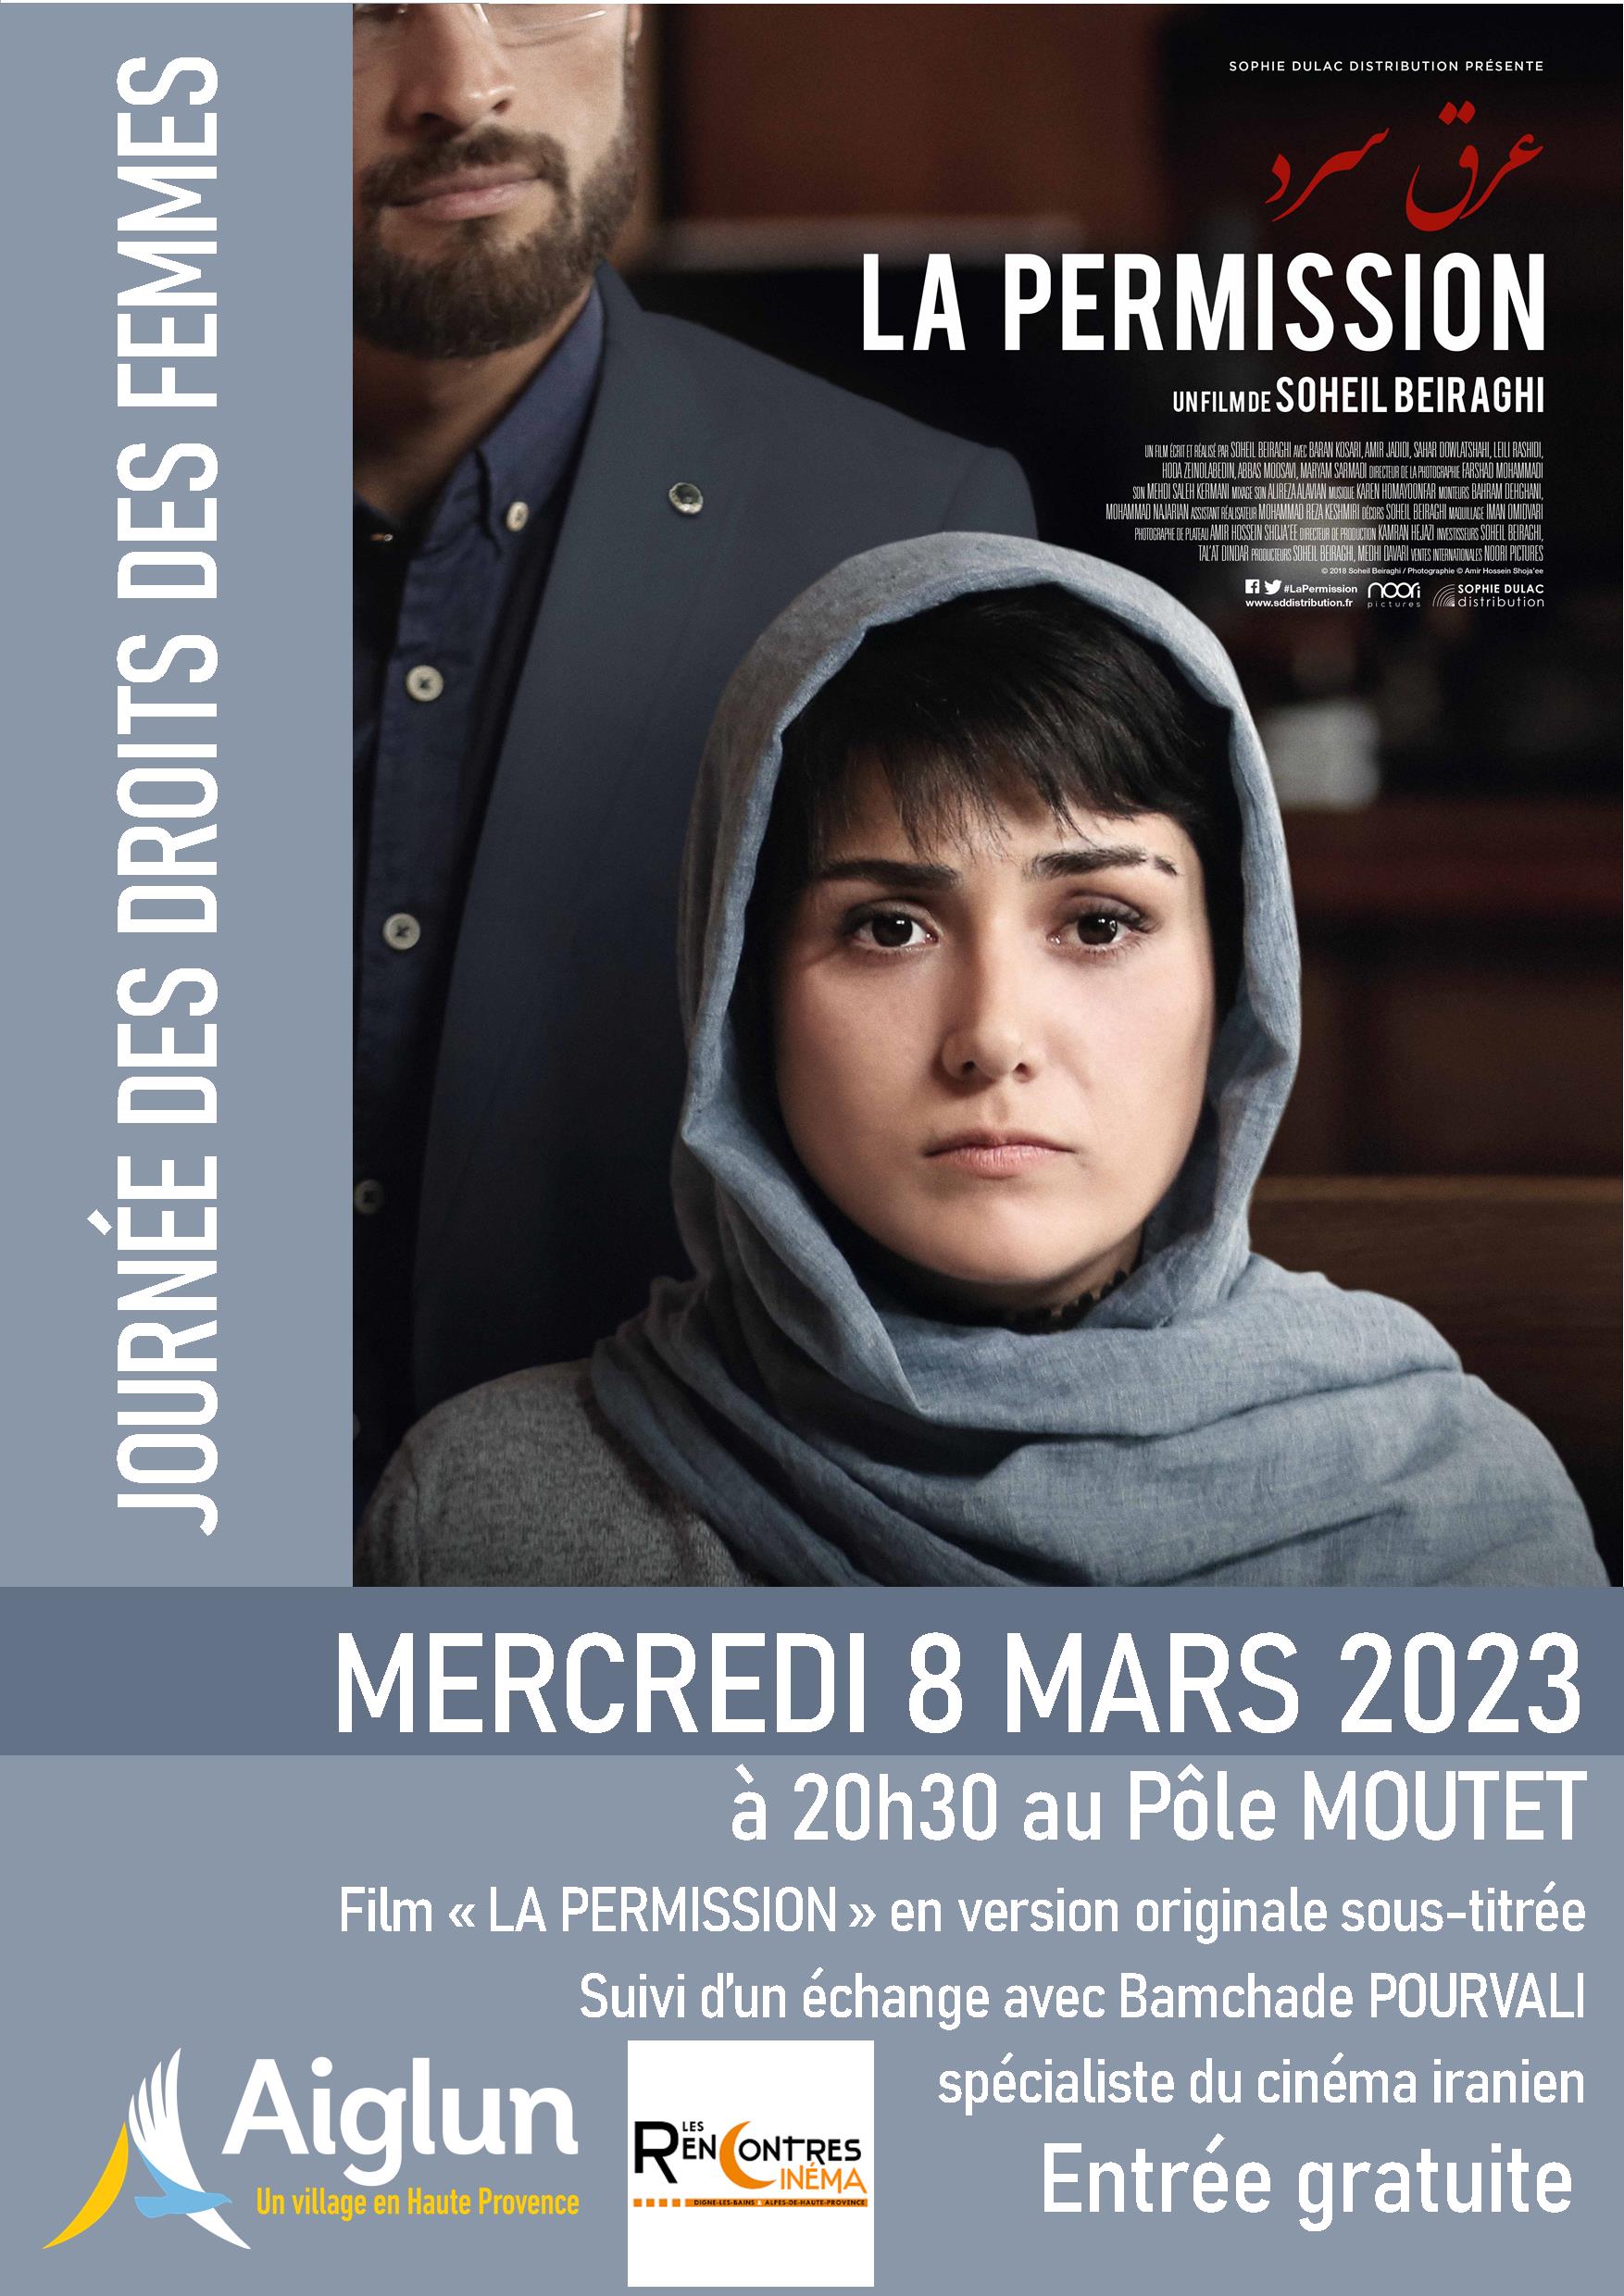 Projection Du Film La Permission Le Mercredi 8 Mars 2023 à 20h30 Pôle Moutet à Aiglun